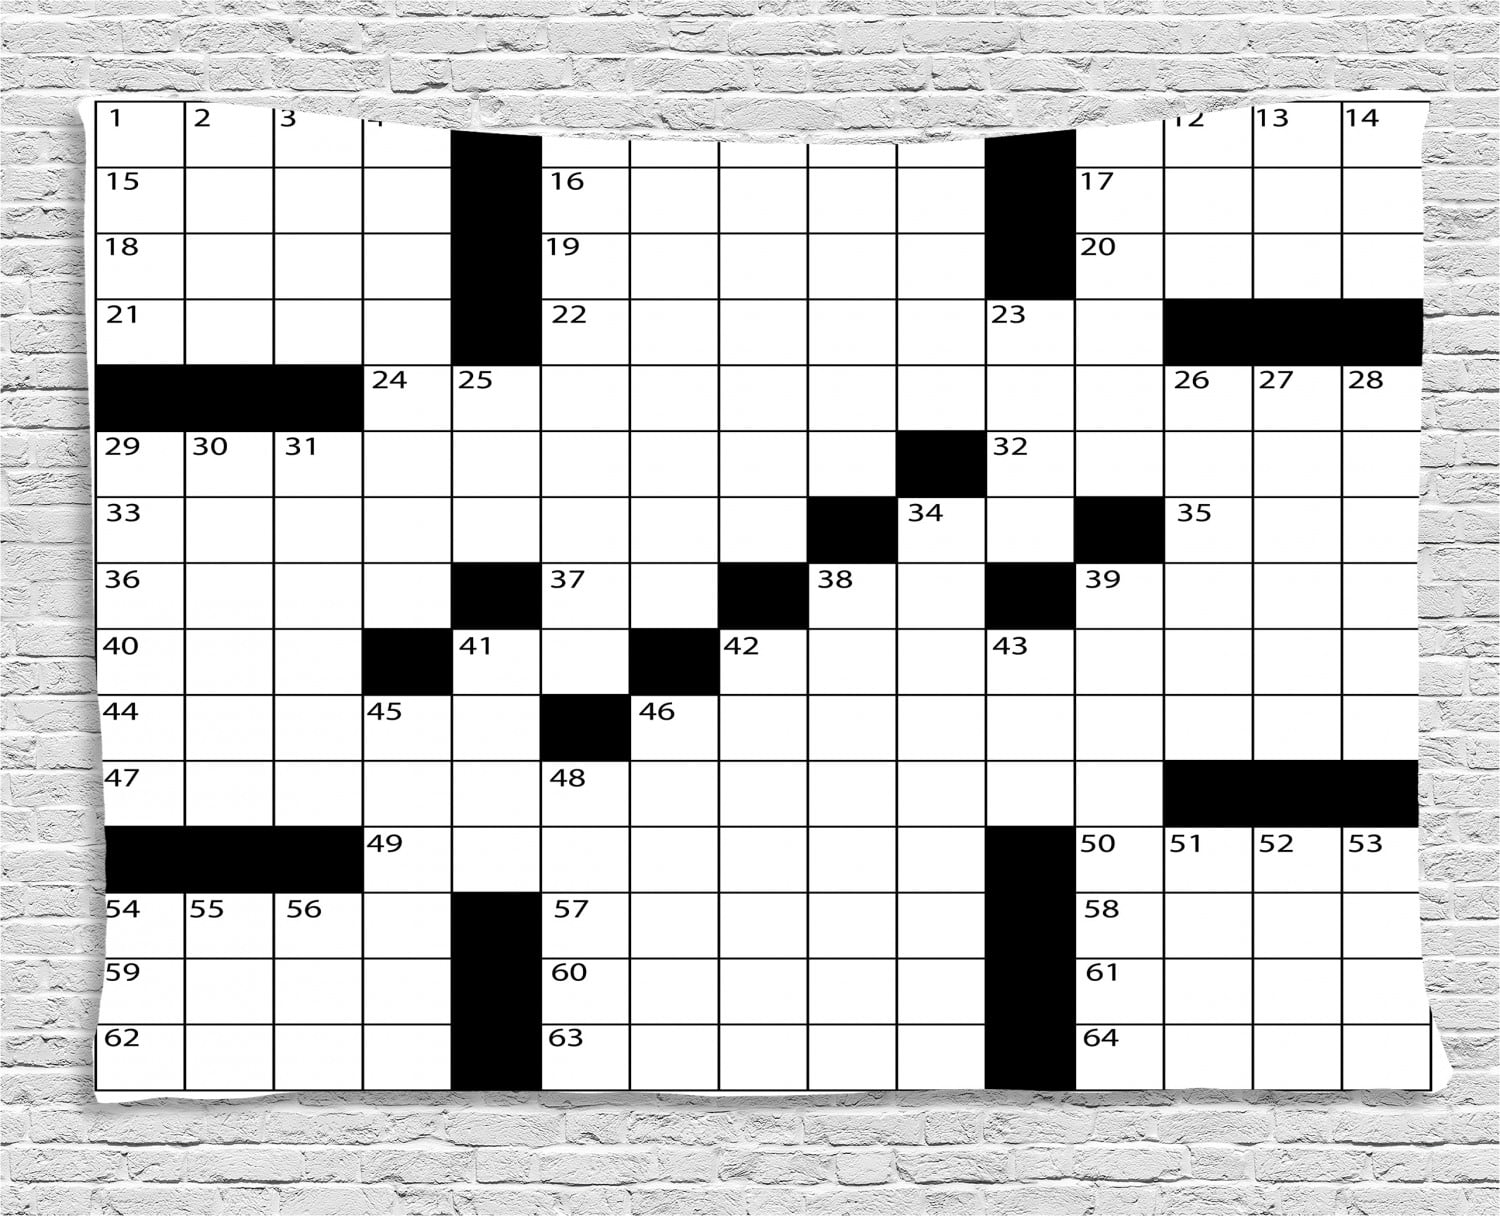 Narrow inlet crossword clue